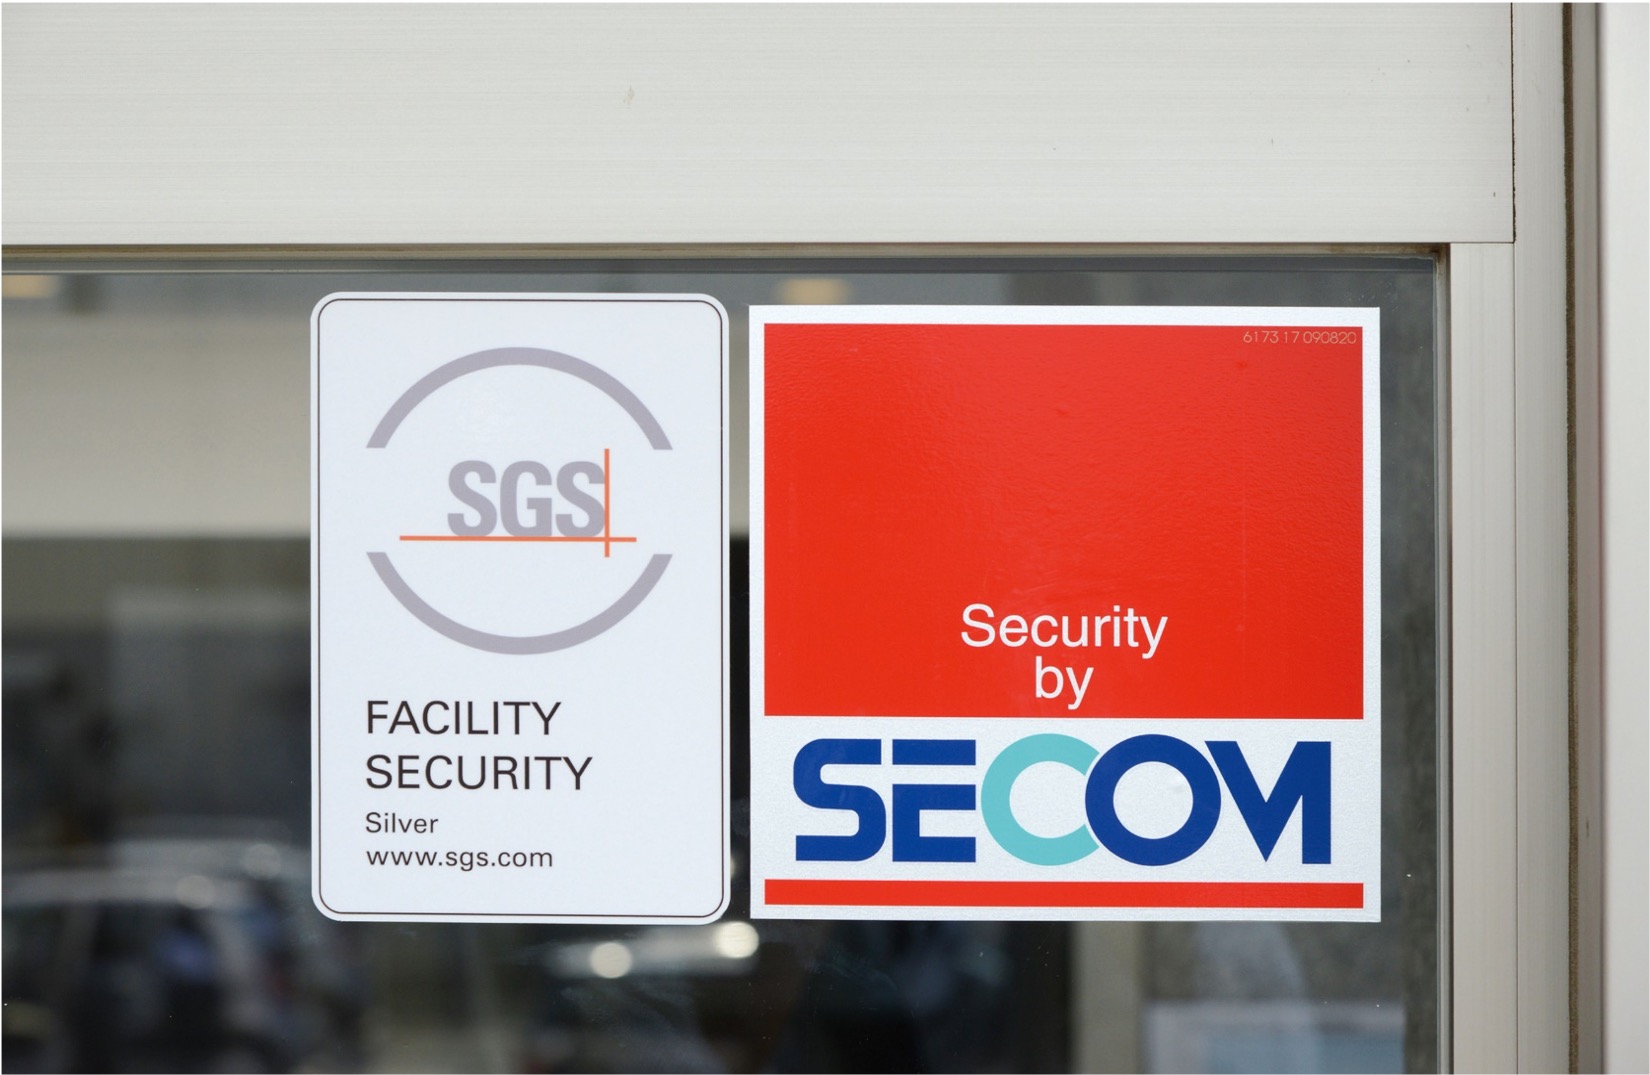 SGS施設セキュリティ認証について